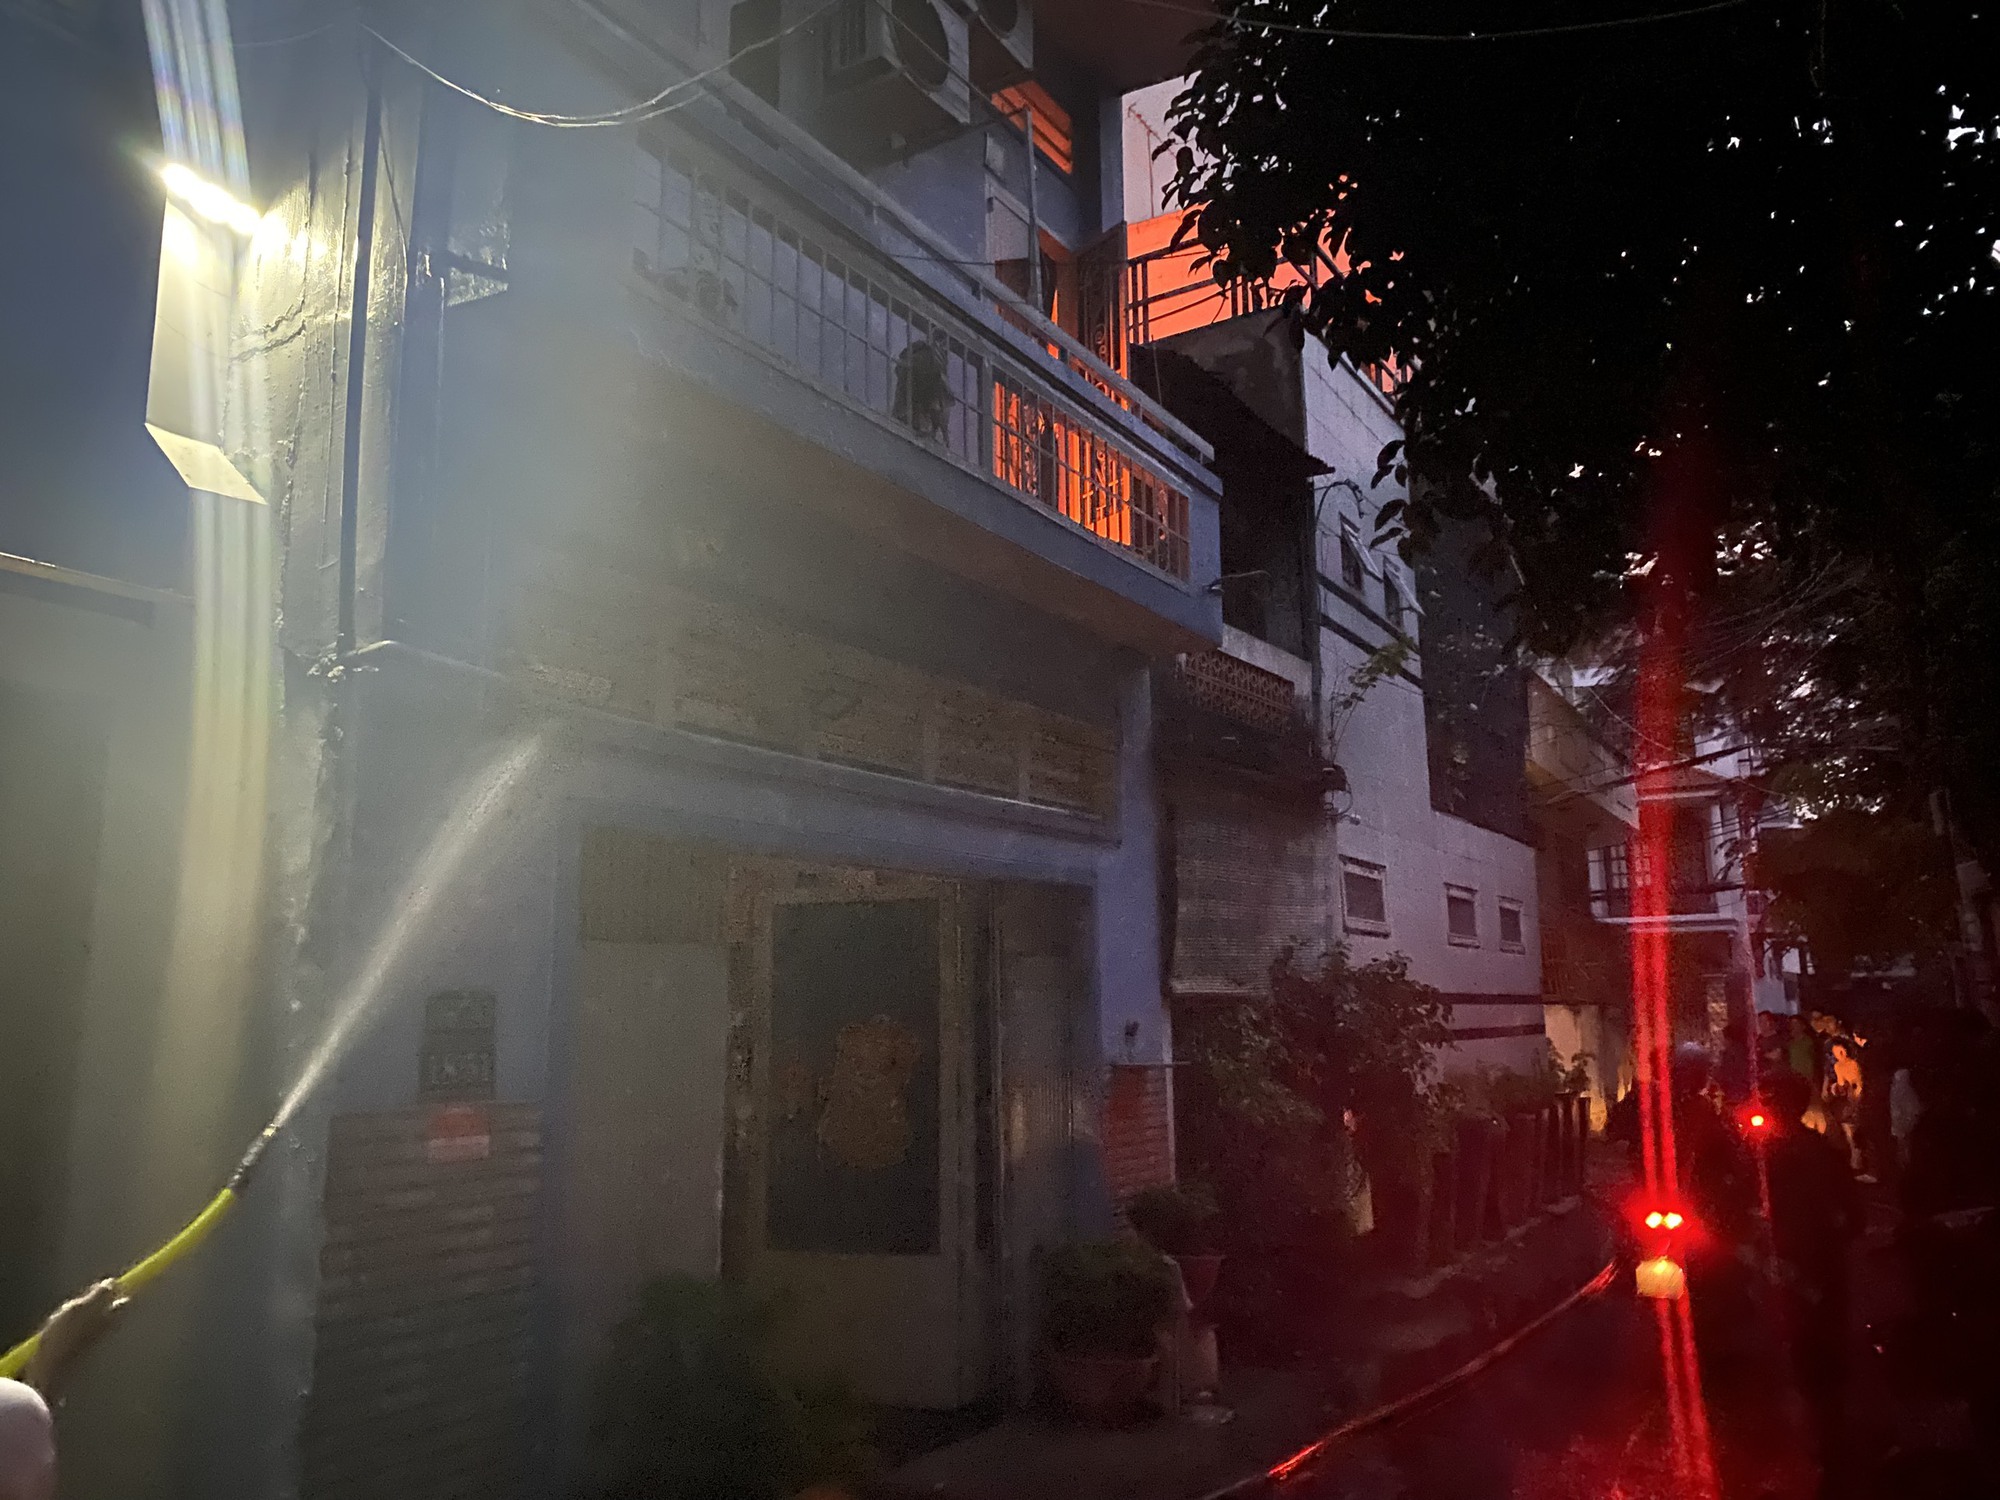 Vụ cháy lớn tại căn nhà 3 tầng, 2 người mắc kẹt bên trong tử vong - Ảnh 1.